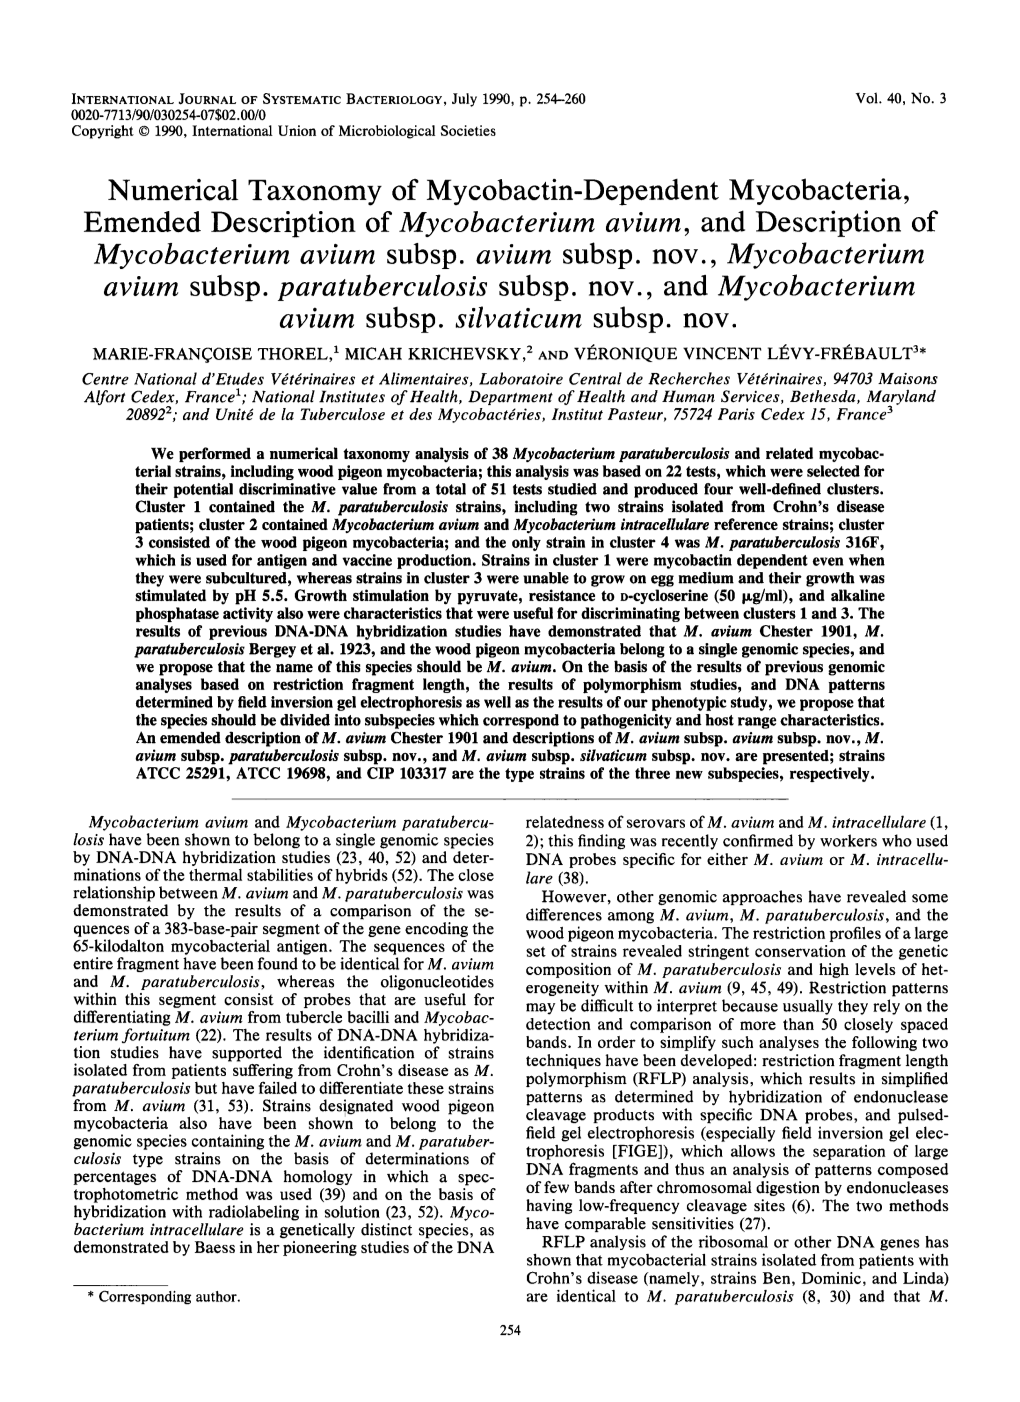 Mycobacterium Avium, and Description of Mycobacterium Avium Subsp